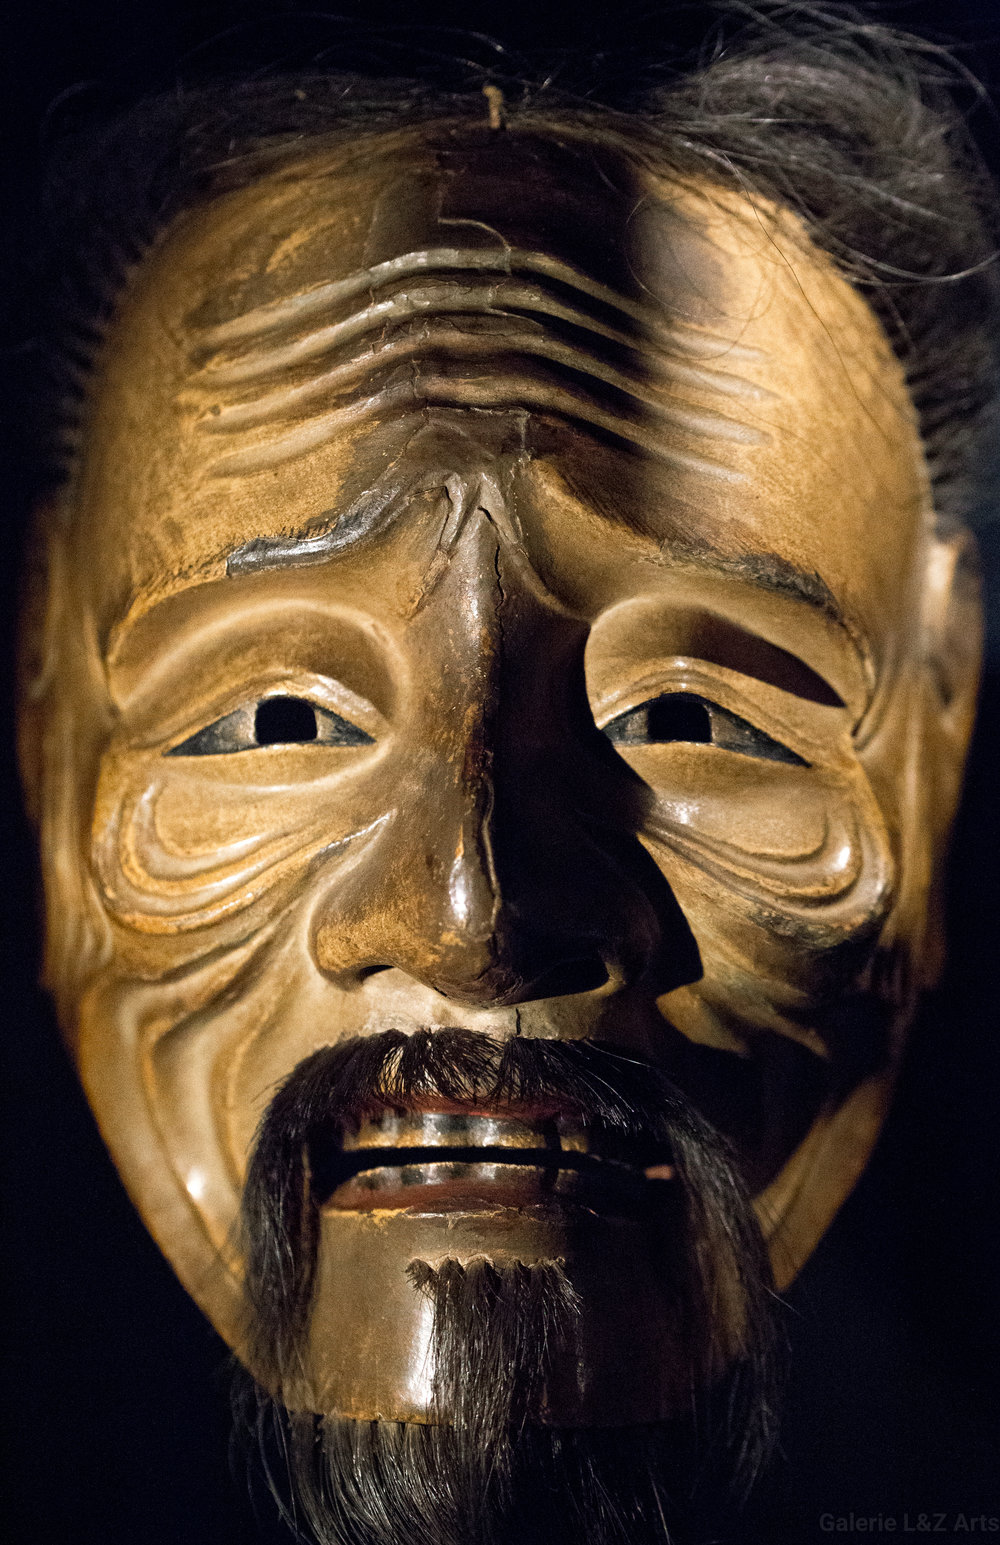 exposition-masque-art-tribal-africain-musee-quai-branly-belgique-galerie-lz-arts-liege-cite-miroir-oceanie-asie-japon-amerique-art-premier-nepal-32.jpg